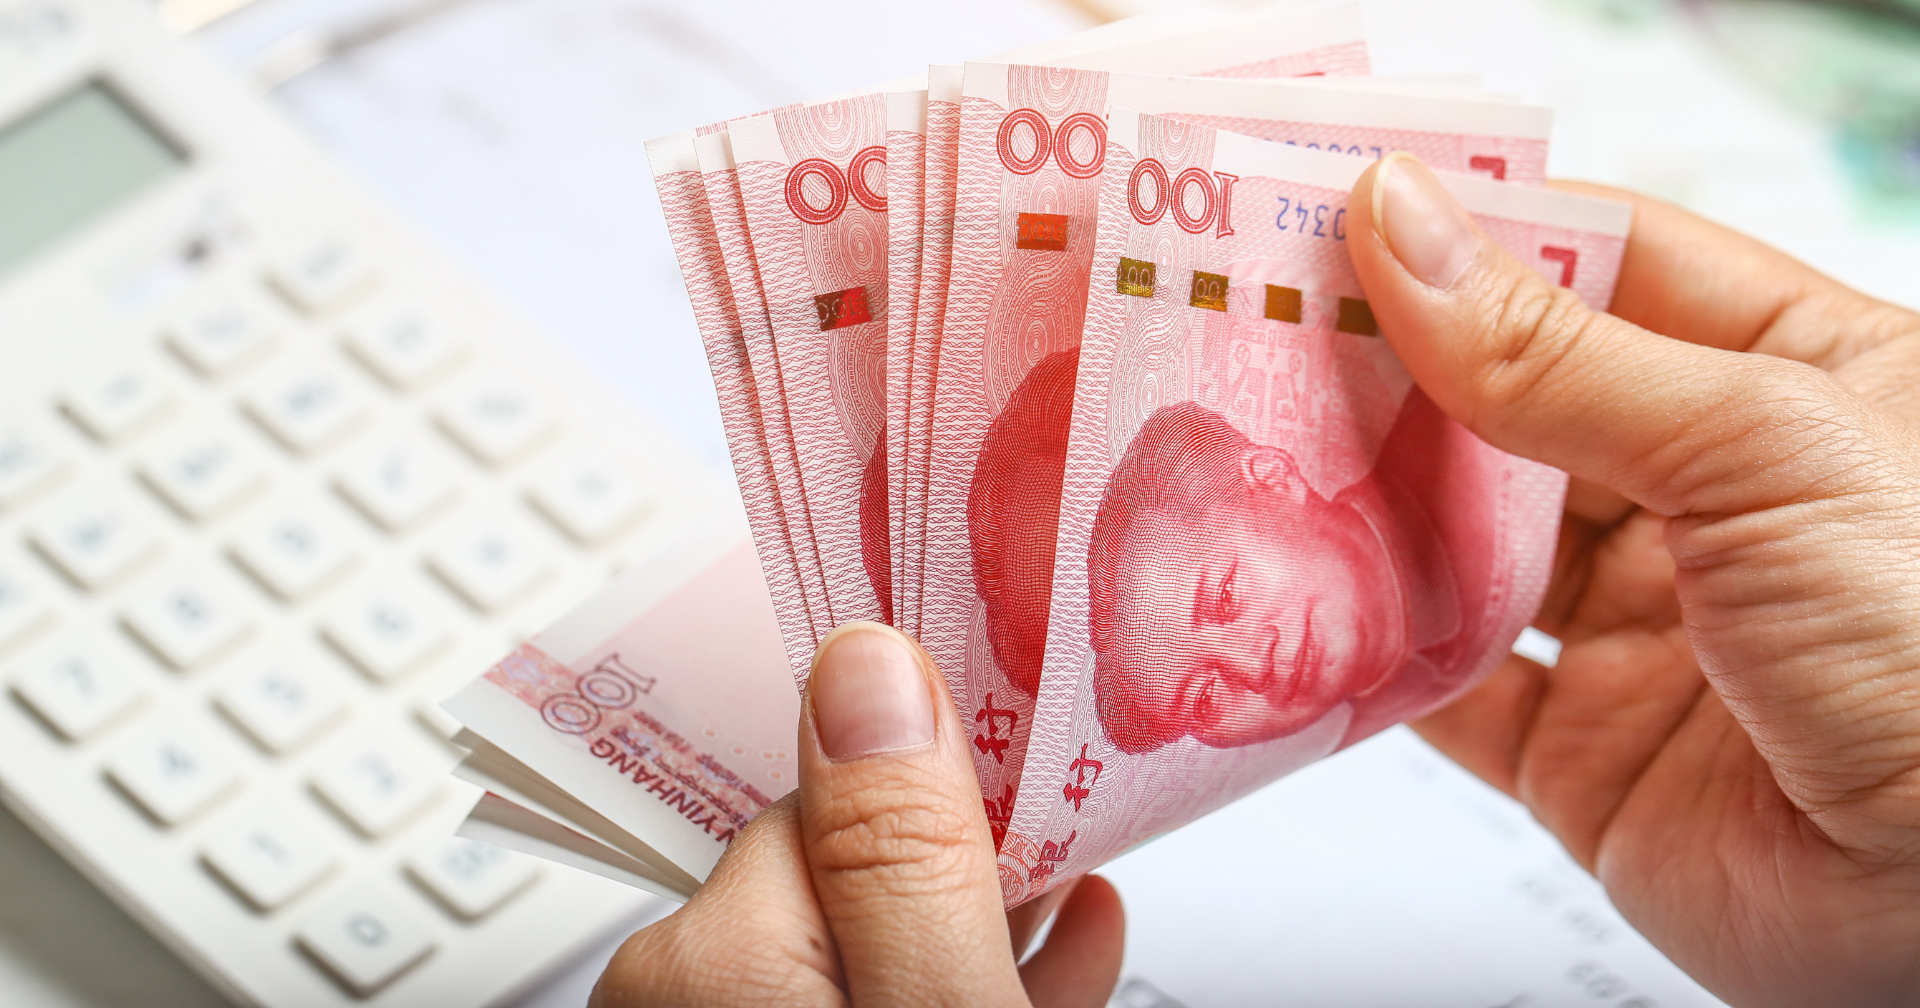 อาร์เจนตินาเตรียมจ่ายค่าสินค้านำเข้าจากจีนเป็นเงินหยวน หลังทุนสำรองระหว่างประเทศหดตัว